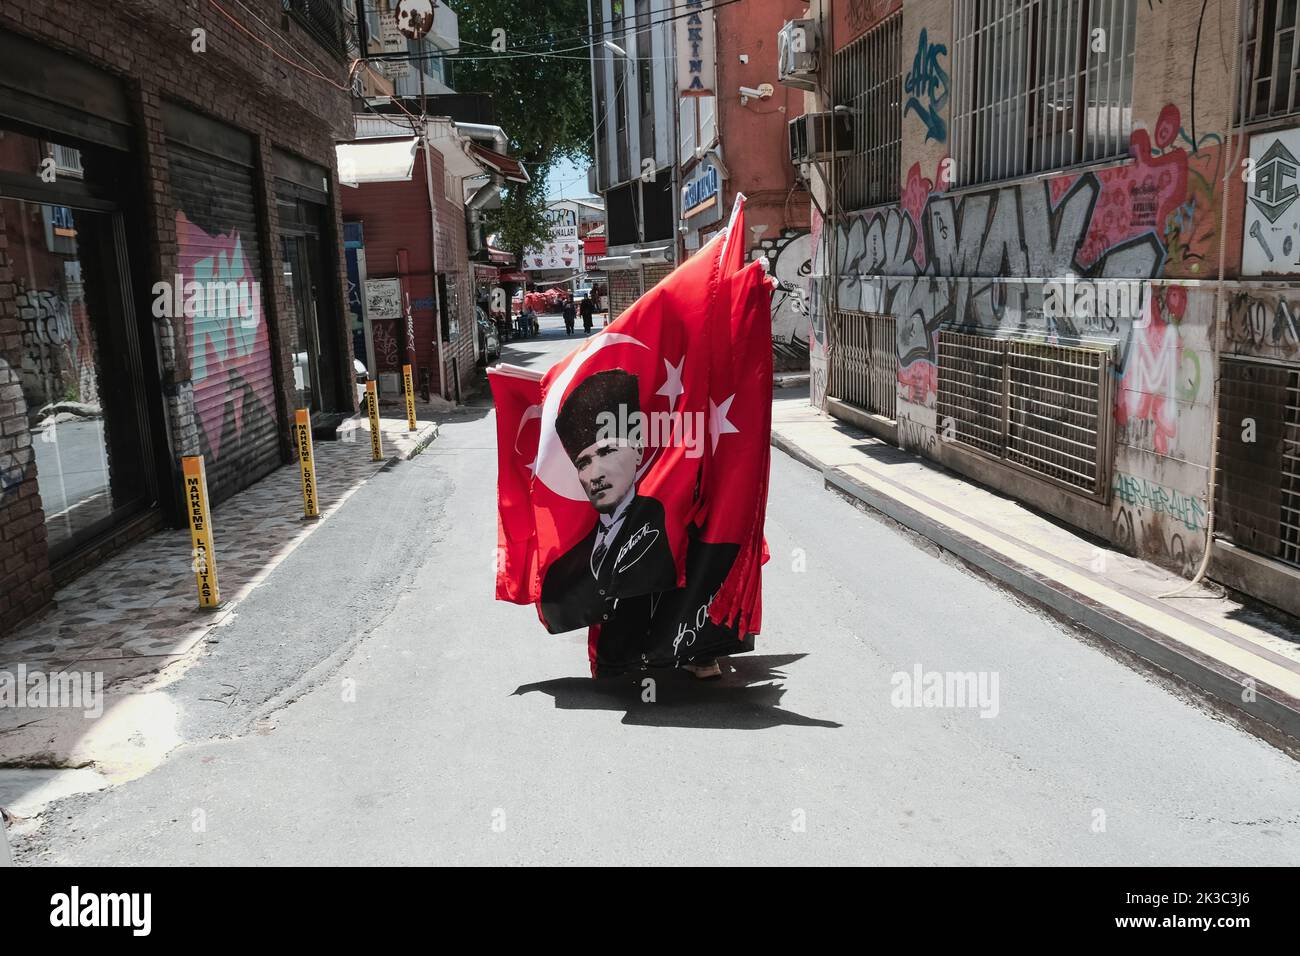 Flaggenverkäufer, der auf der Straße mit türkischen Flaggen, Atatürk-Flagge, Eminonu Karakoy-Straßen, Konzept für nationale Feierlichkeiten in der Türkei, Moment festhalten Stockfoto